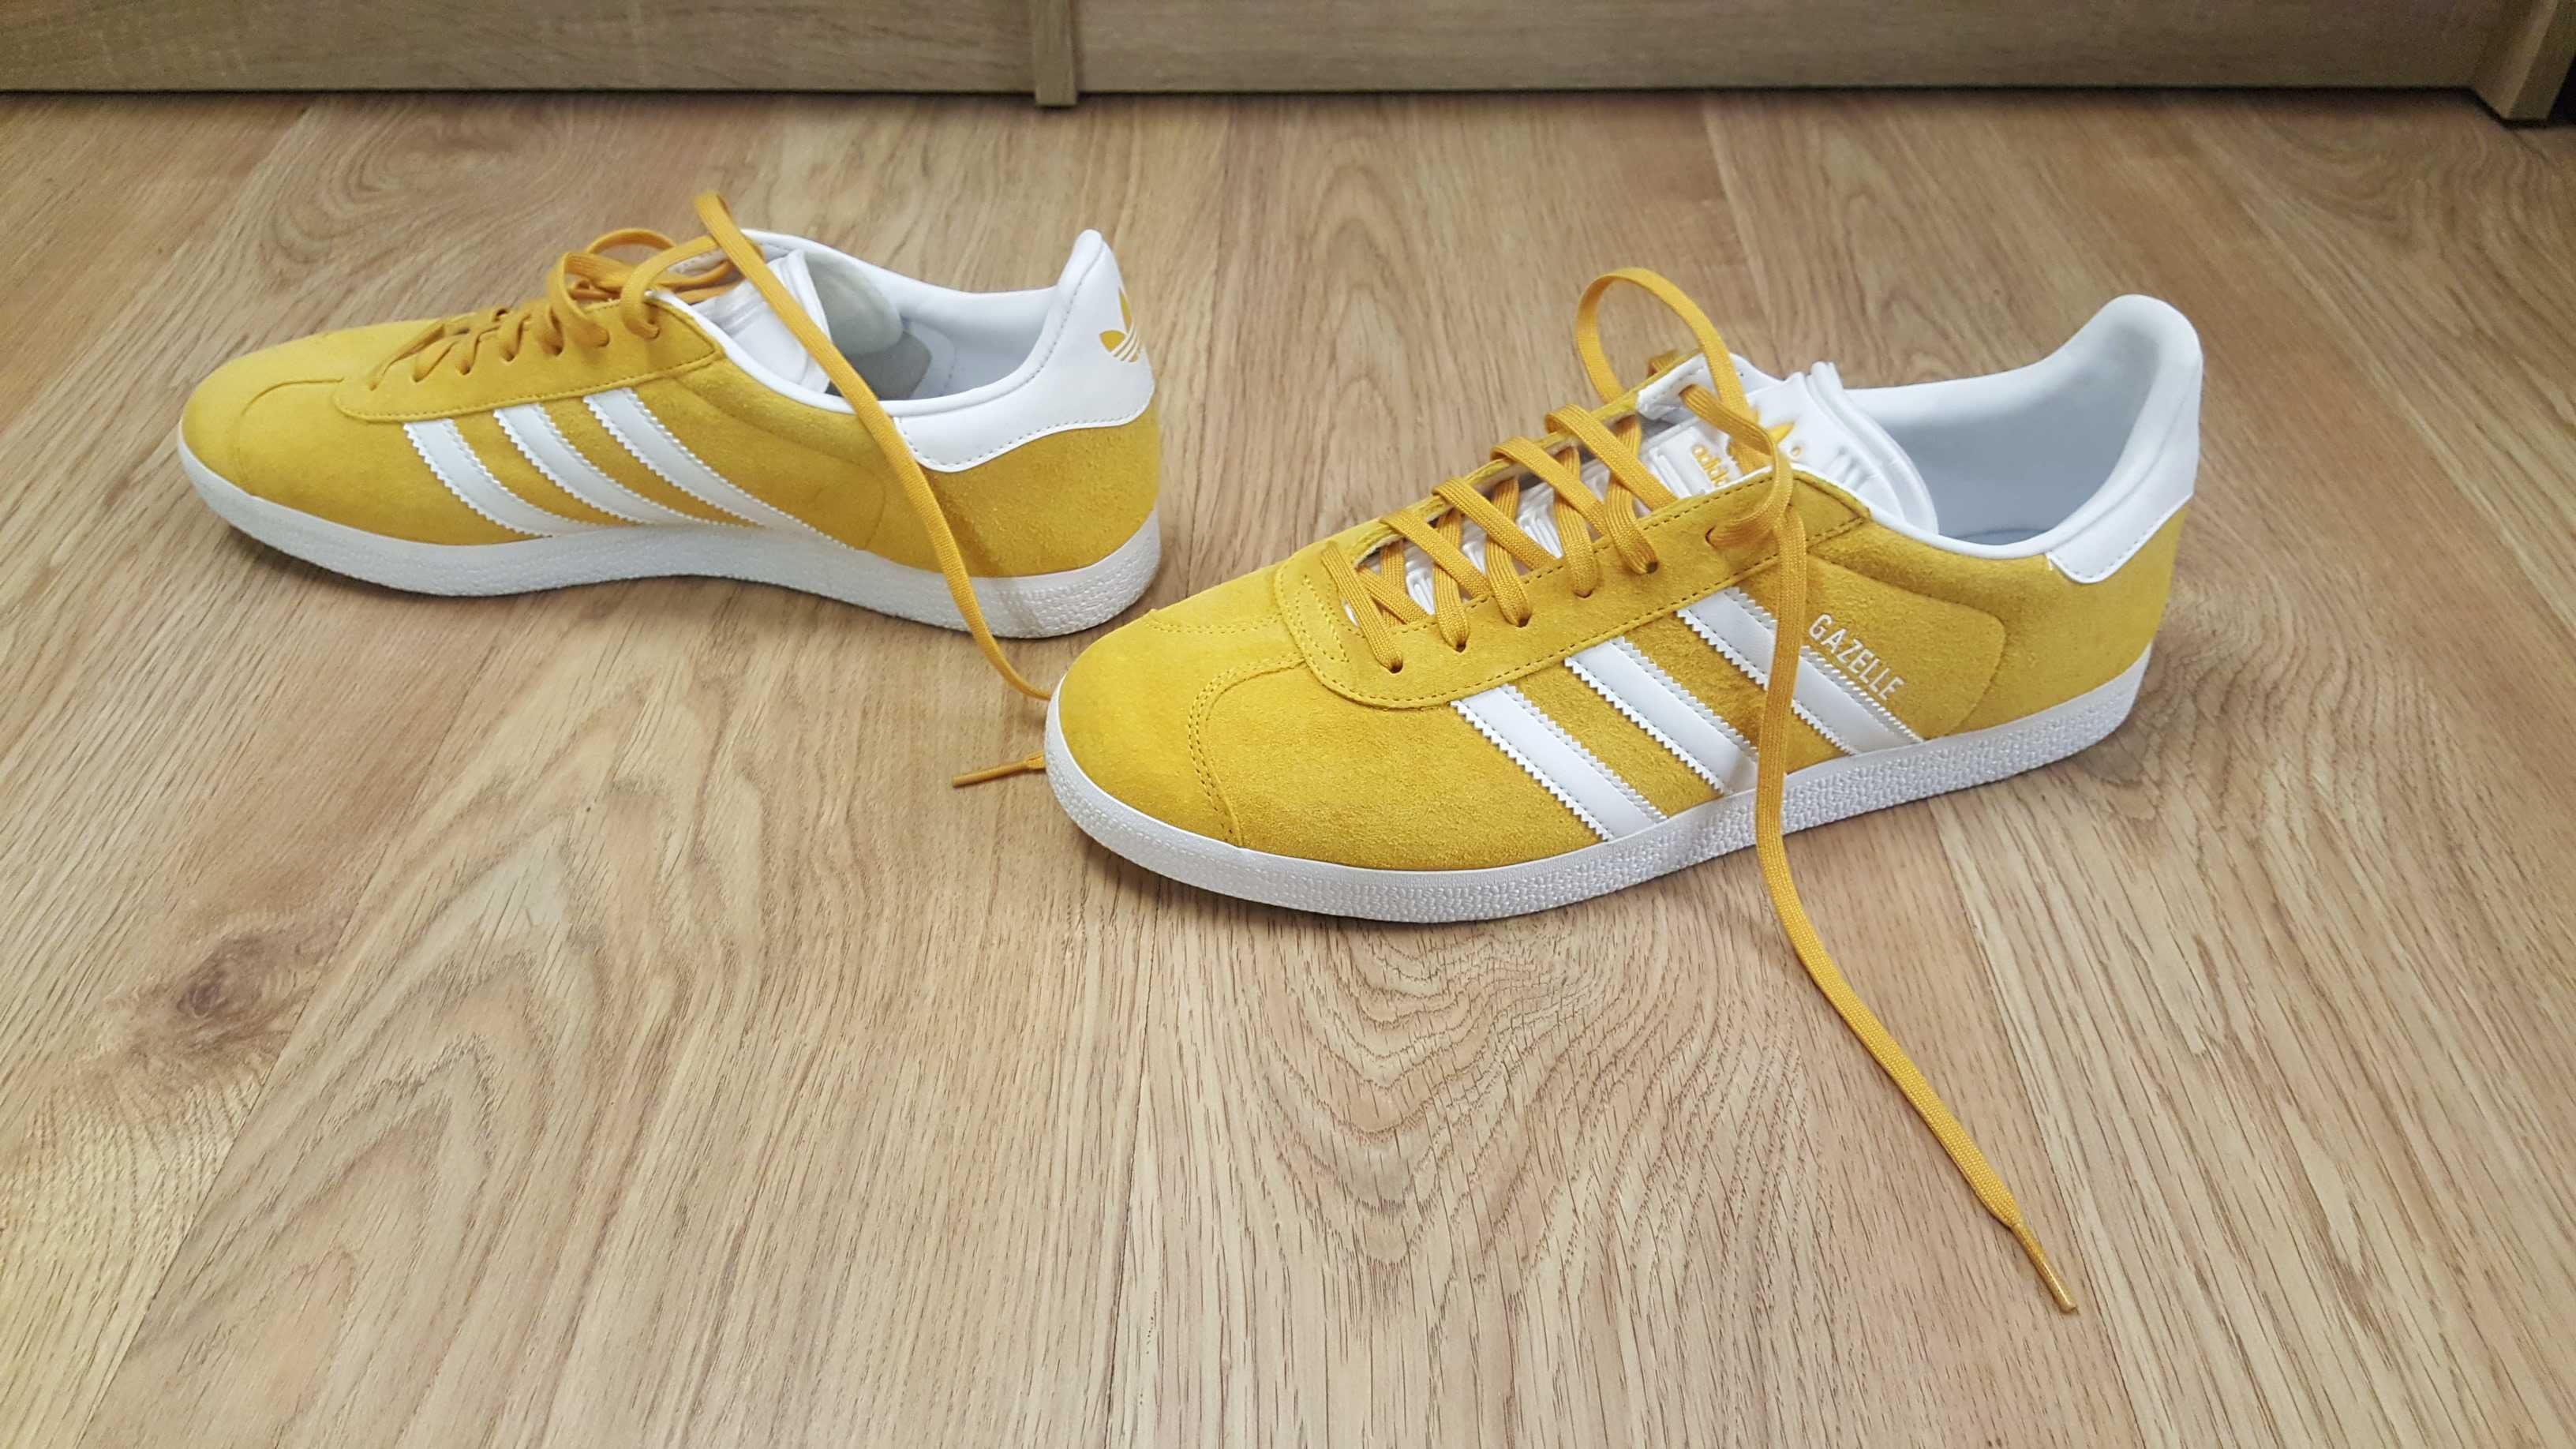 Buty Adidas Gazelle żółte 43,5 27cm wkładka